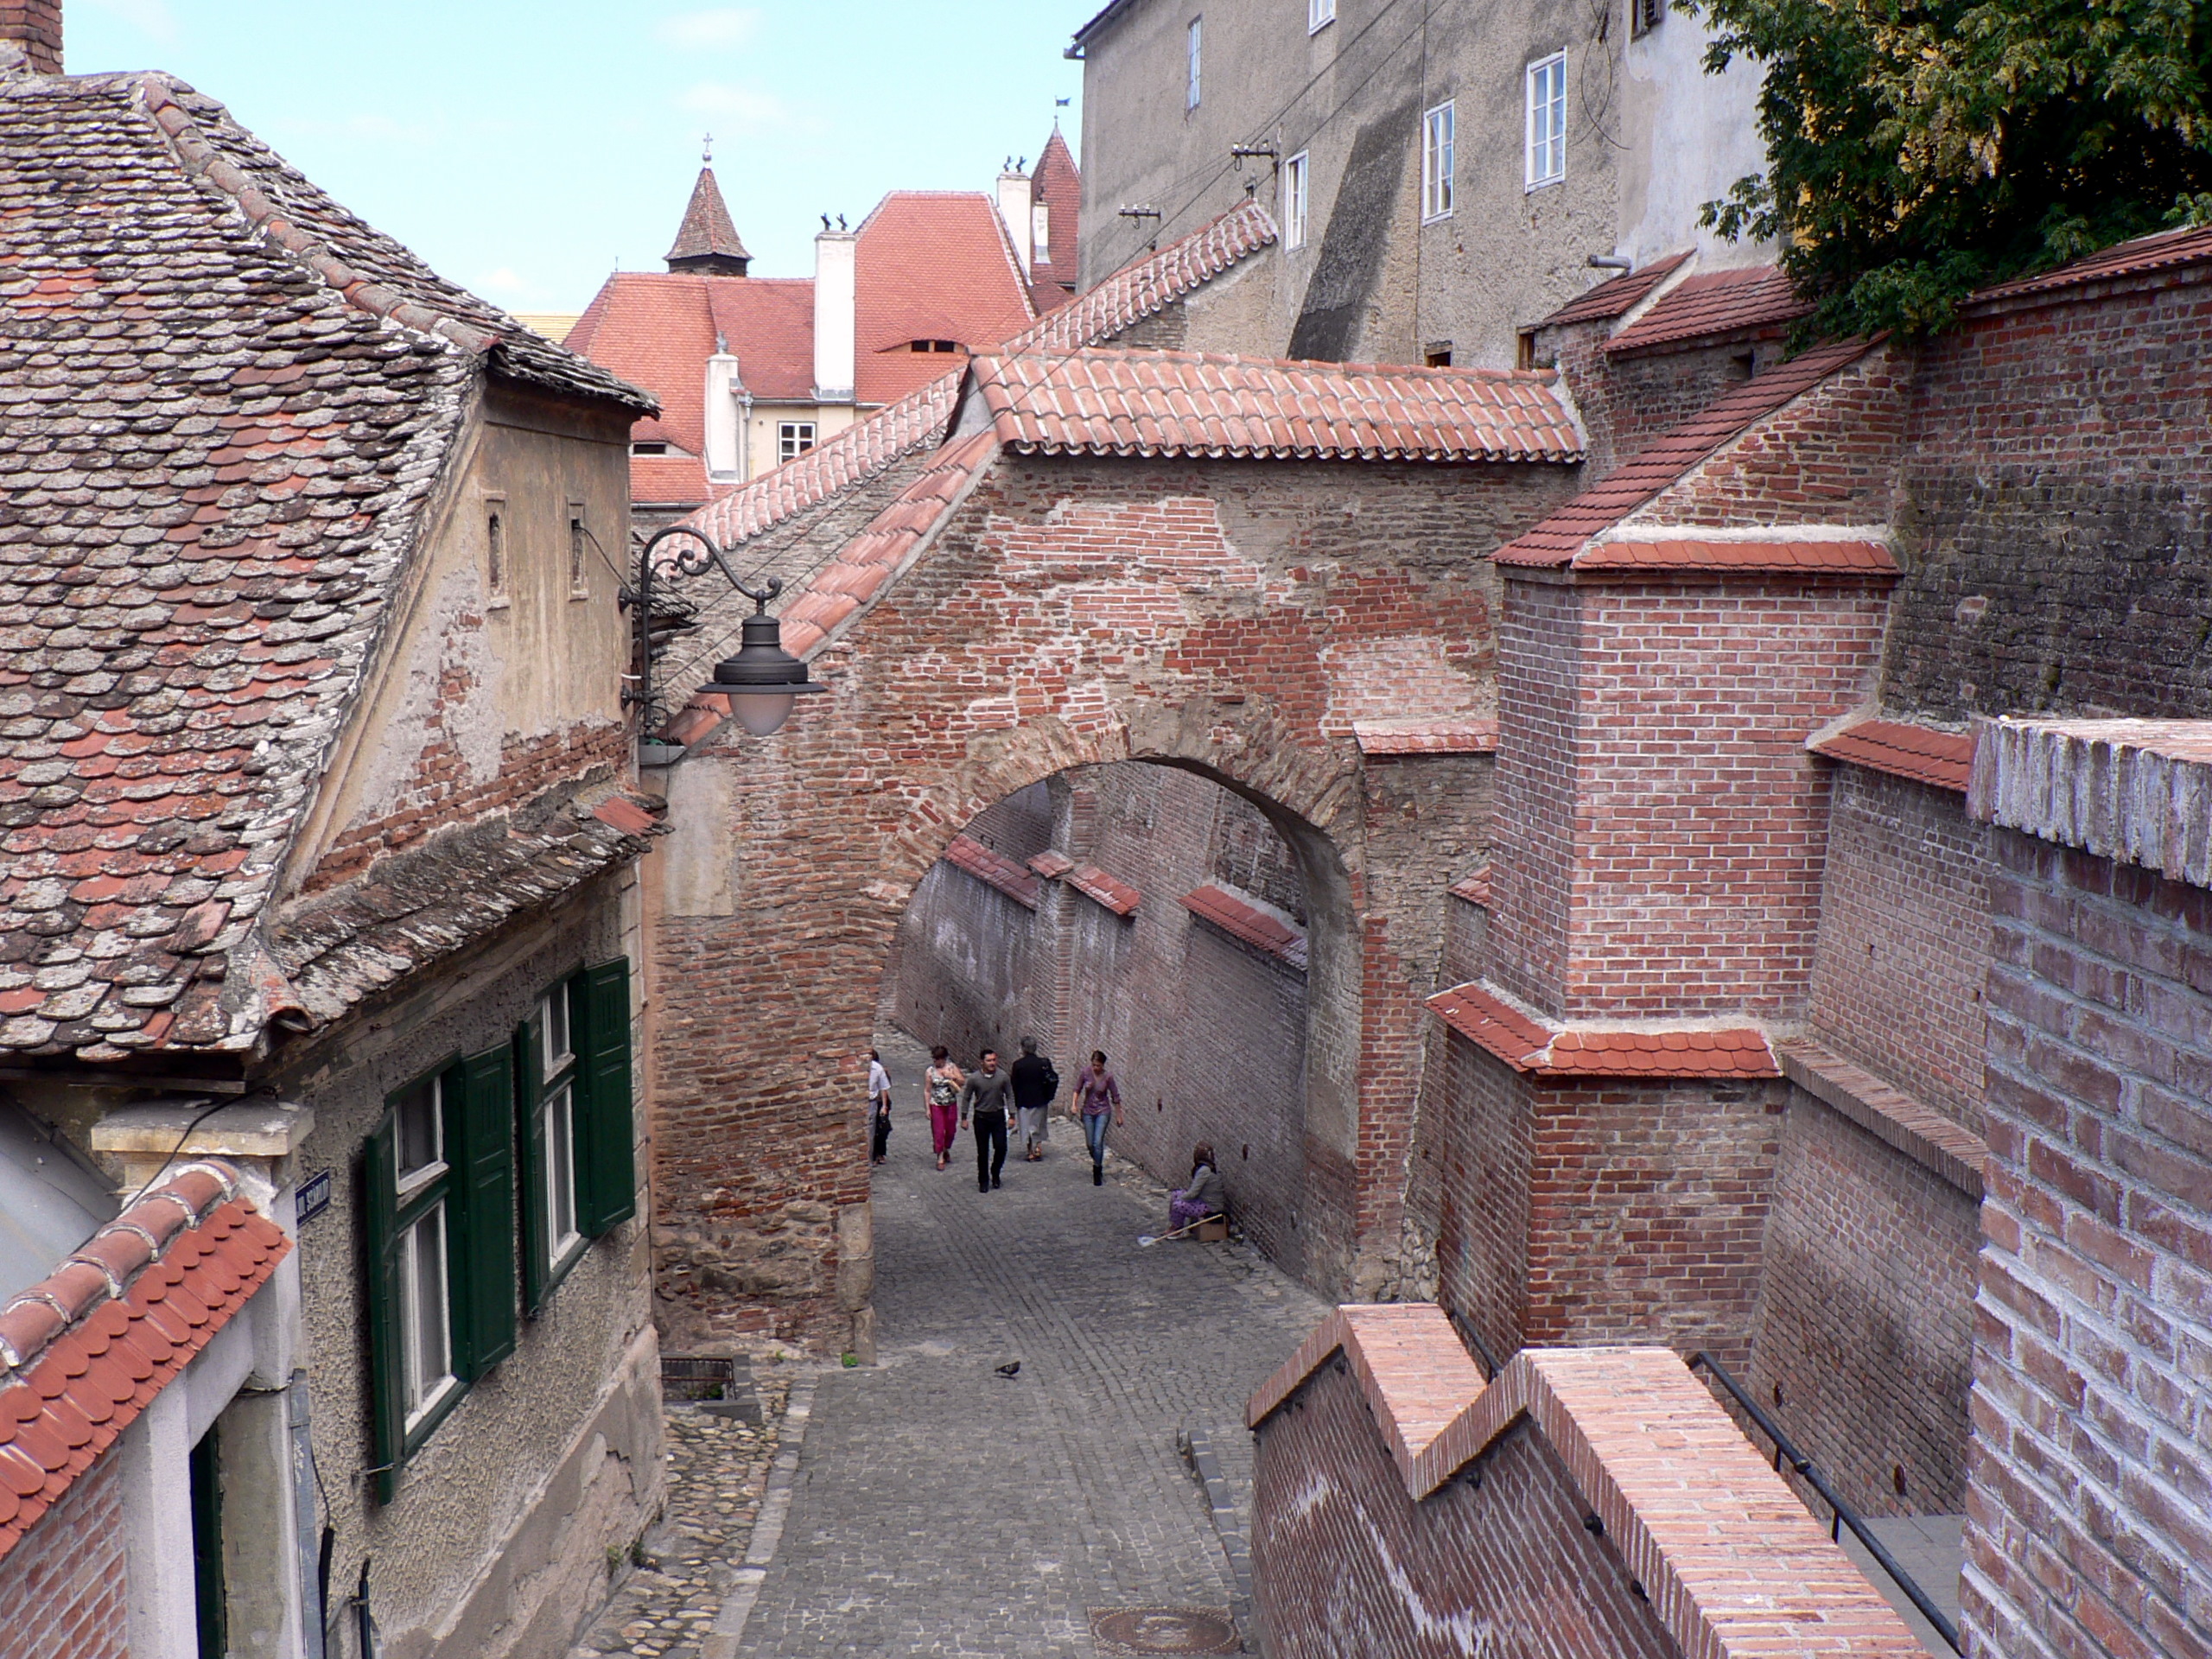 A tour of the city of cultural centers “Sibiu” in - A tour of the city of cultural centers “Sibiu” in Romenia